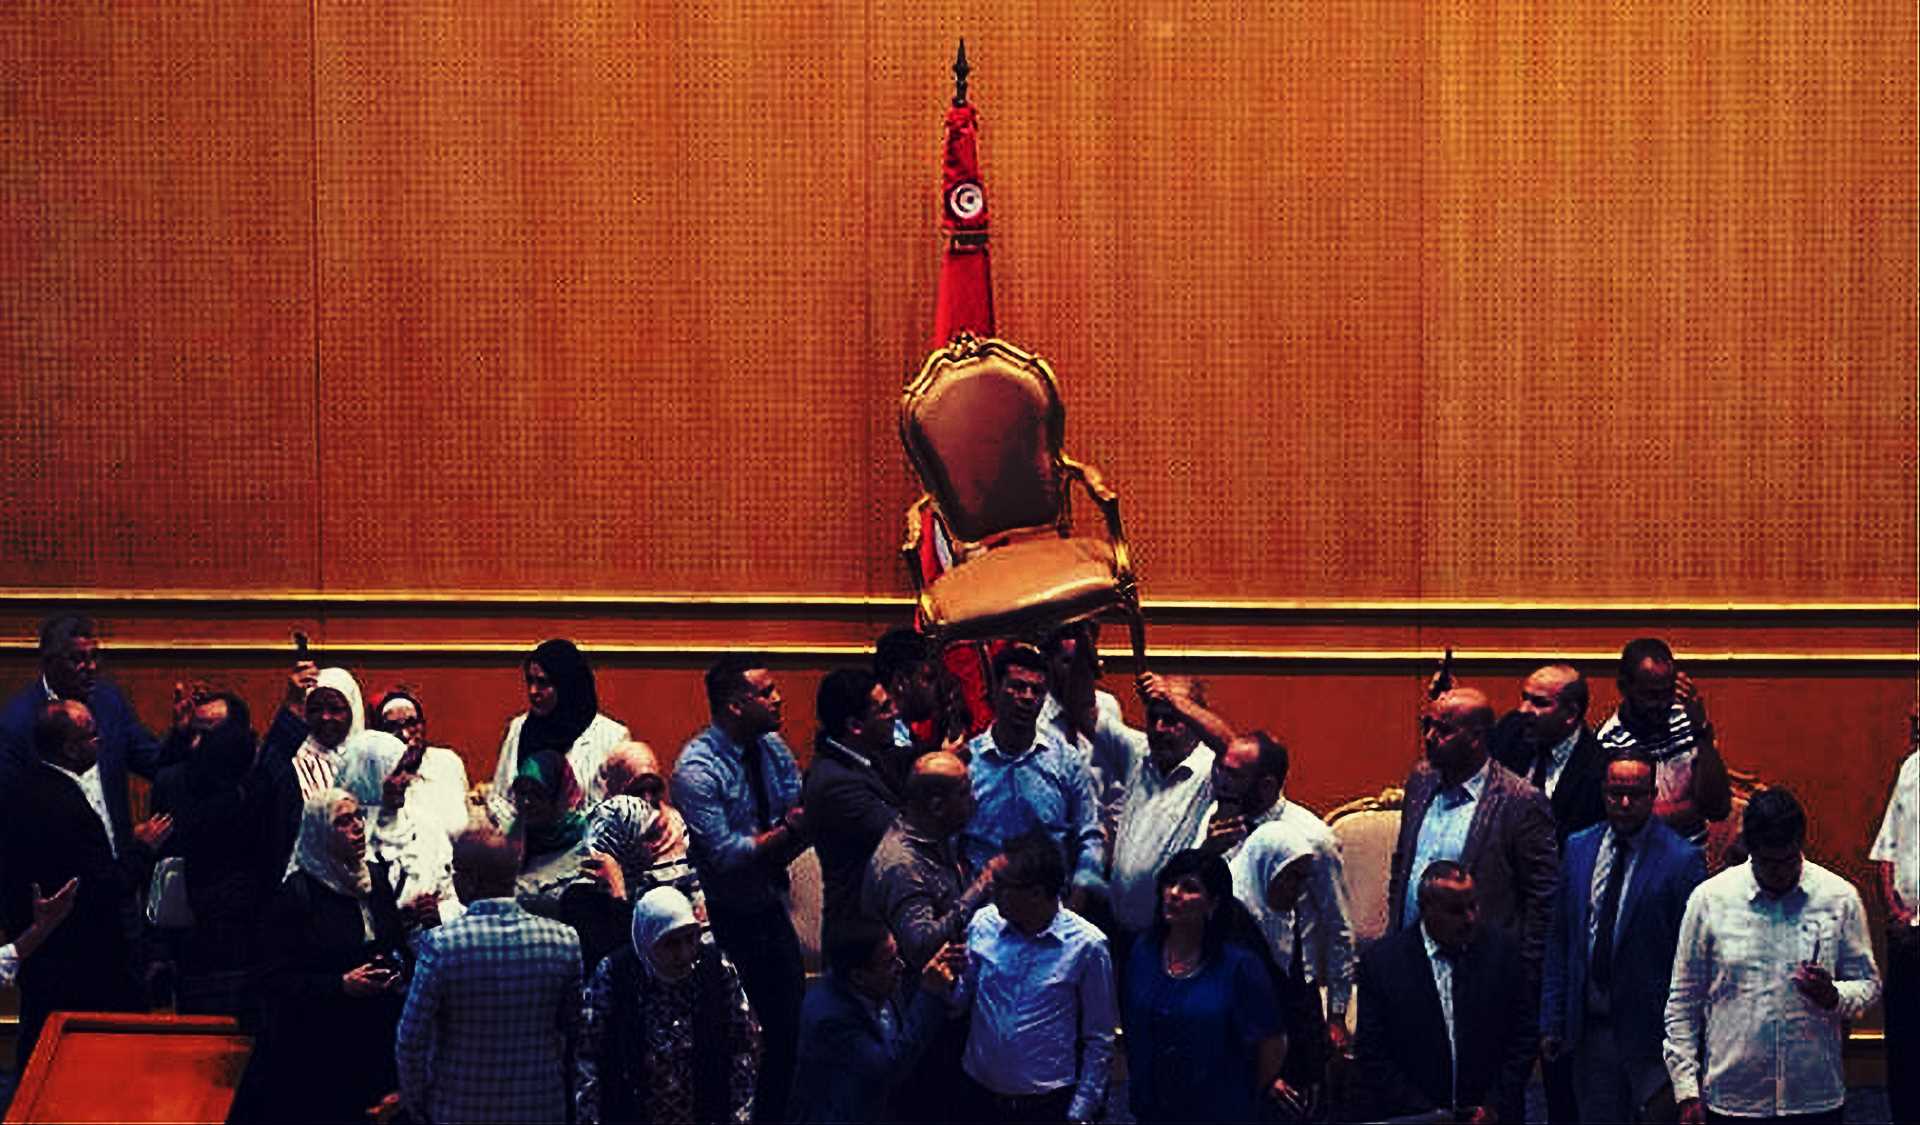 السياسي التونسي و"الترهدين"